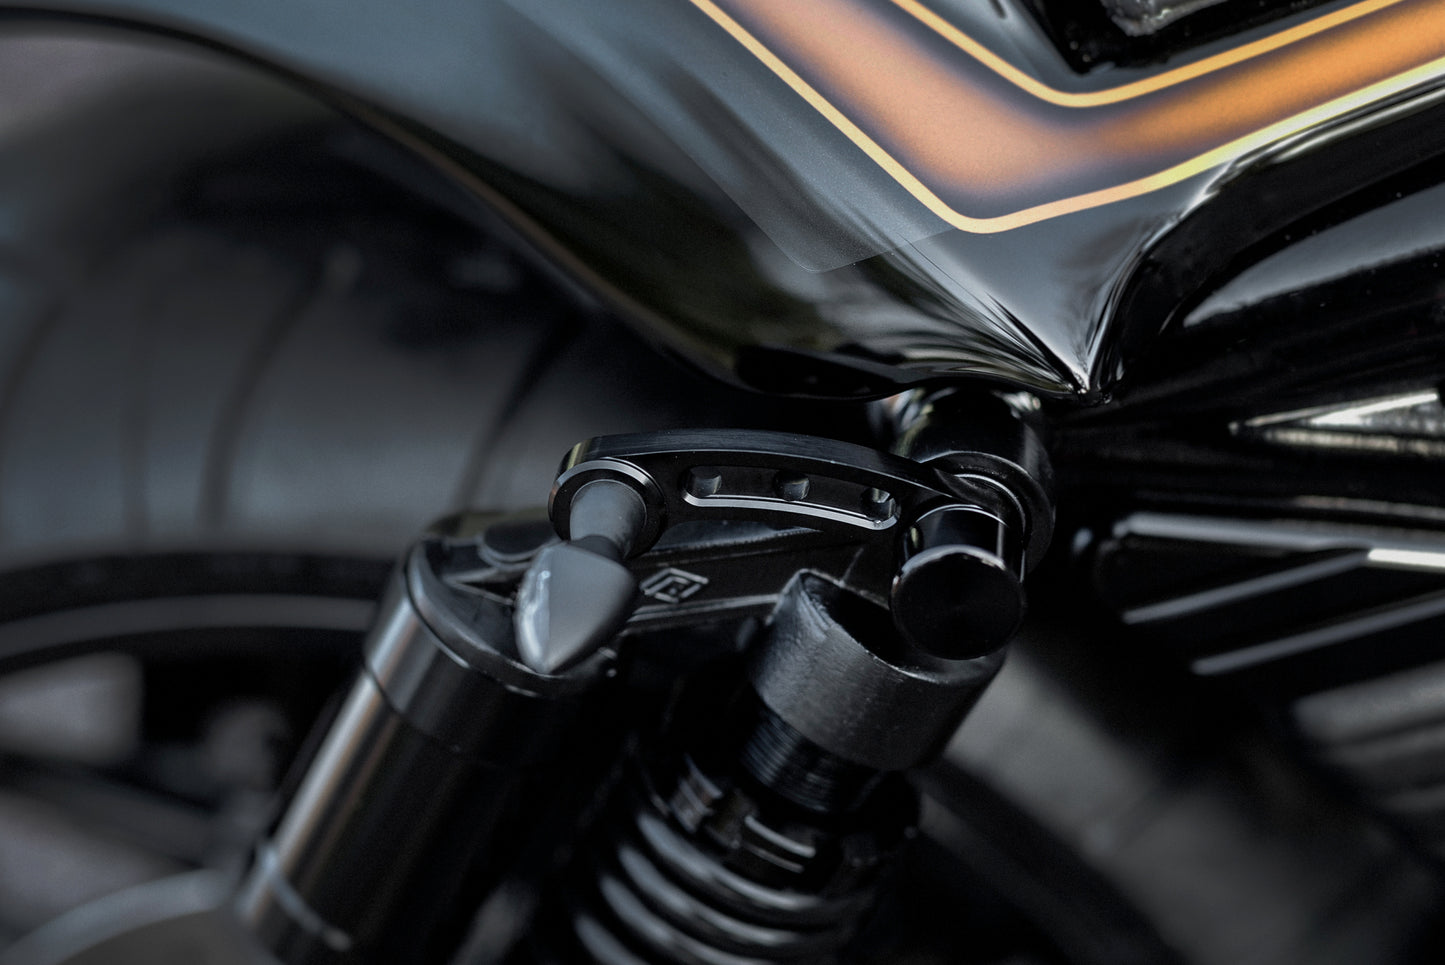 Zoomed Harley Davidson motorcycle with Killer Custom V-Rod billet turn signal bracket